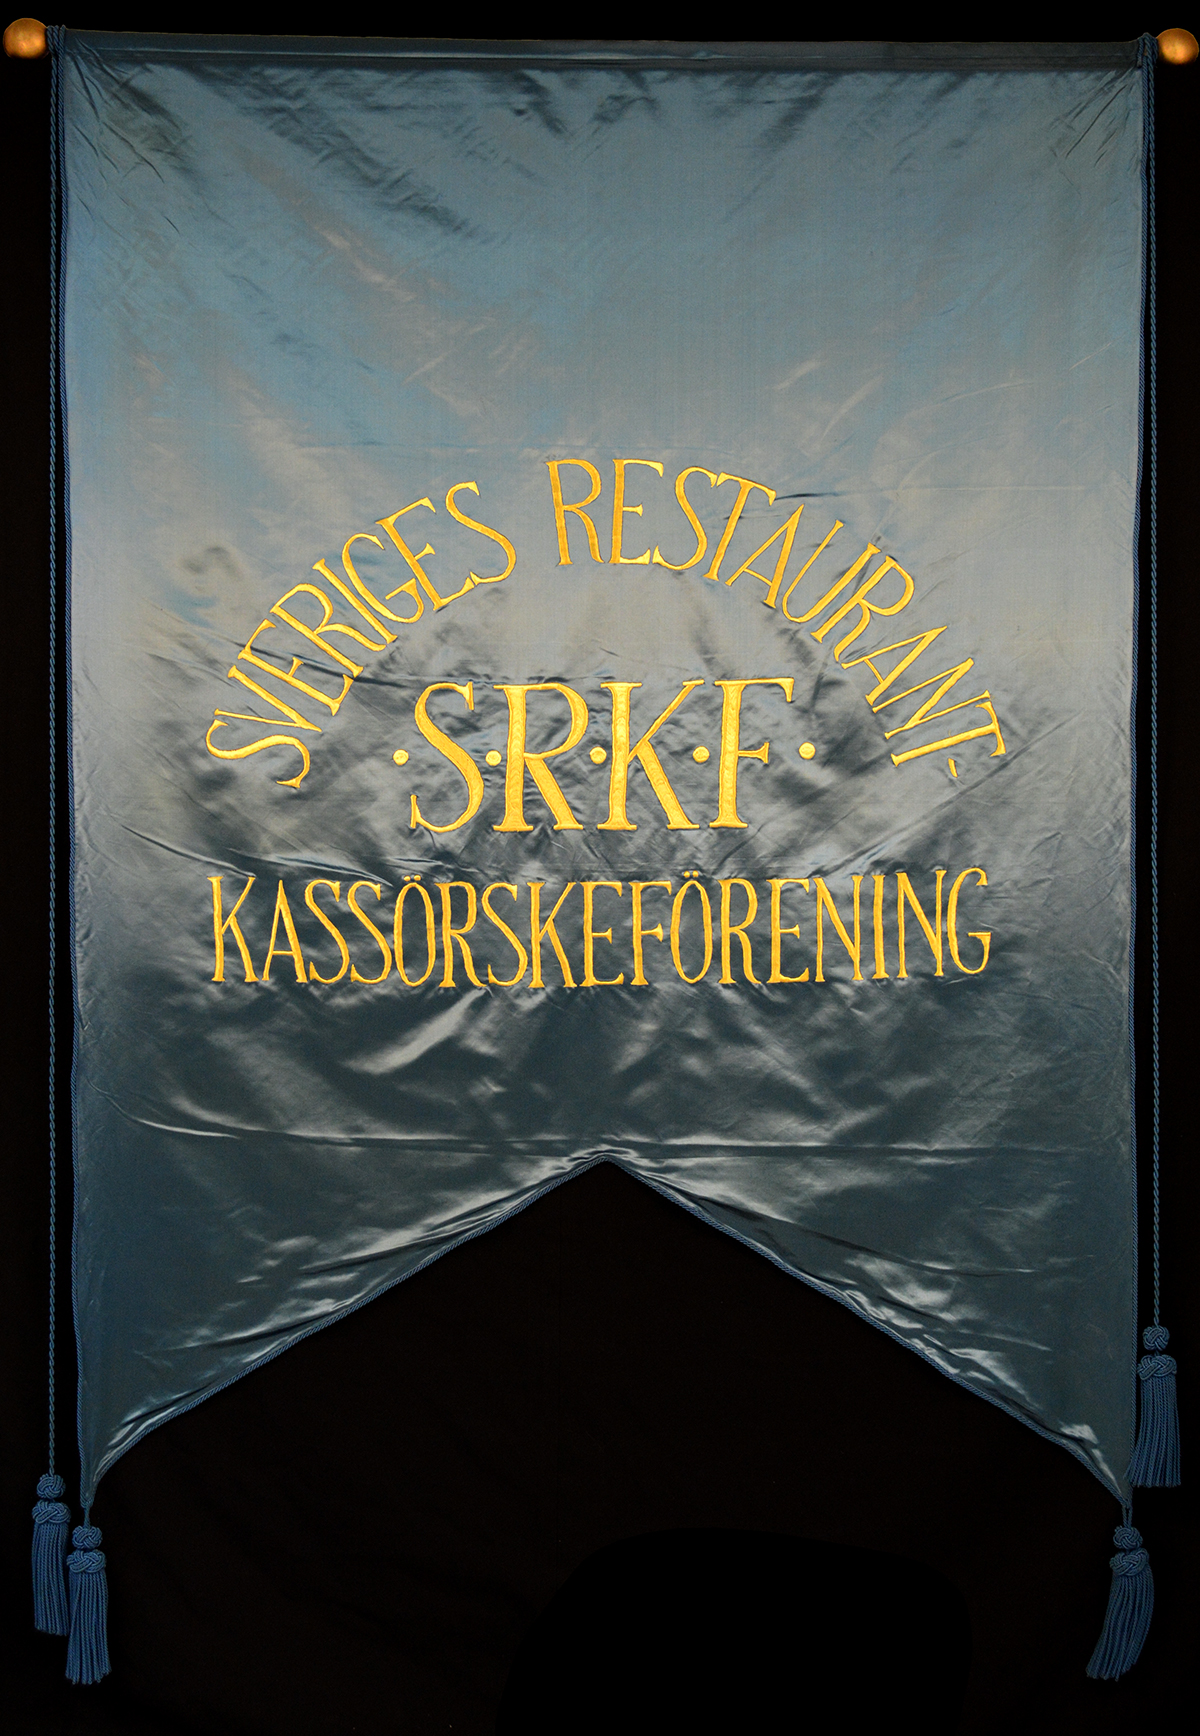 1. Fana för Sveriges Restaurantkassörskeförening